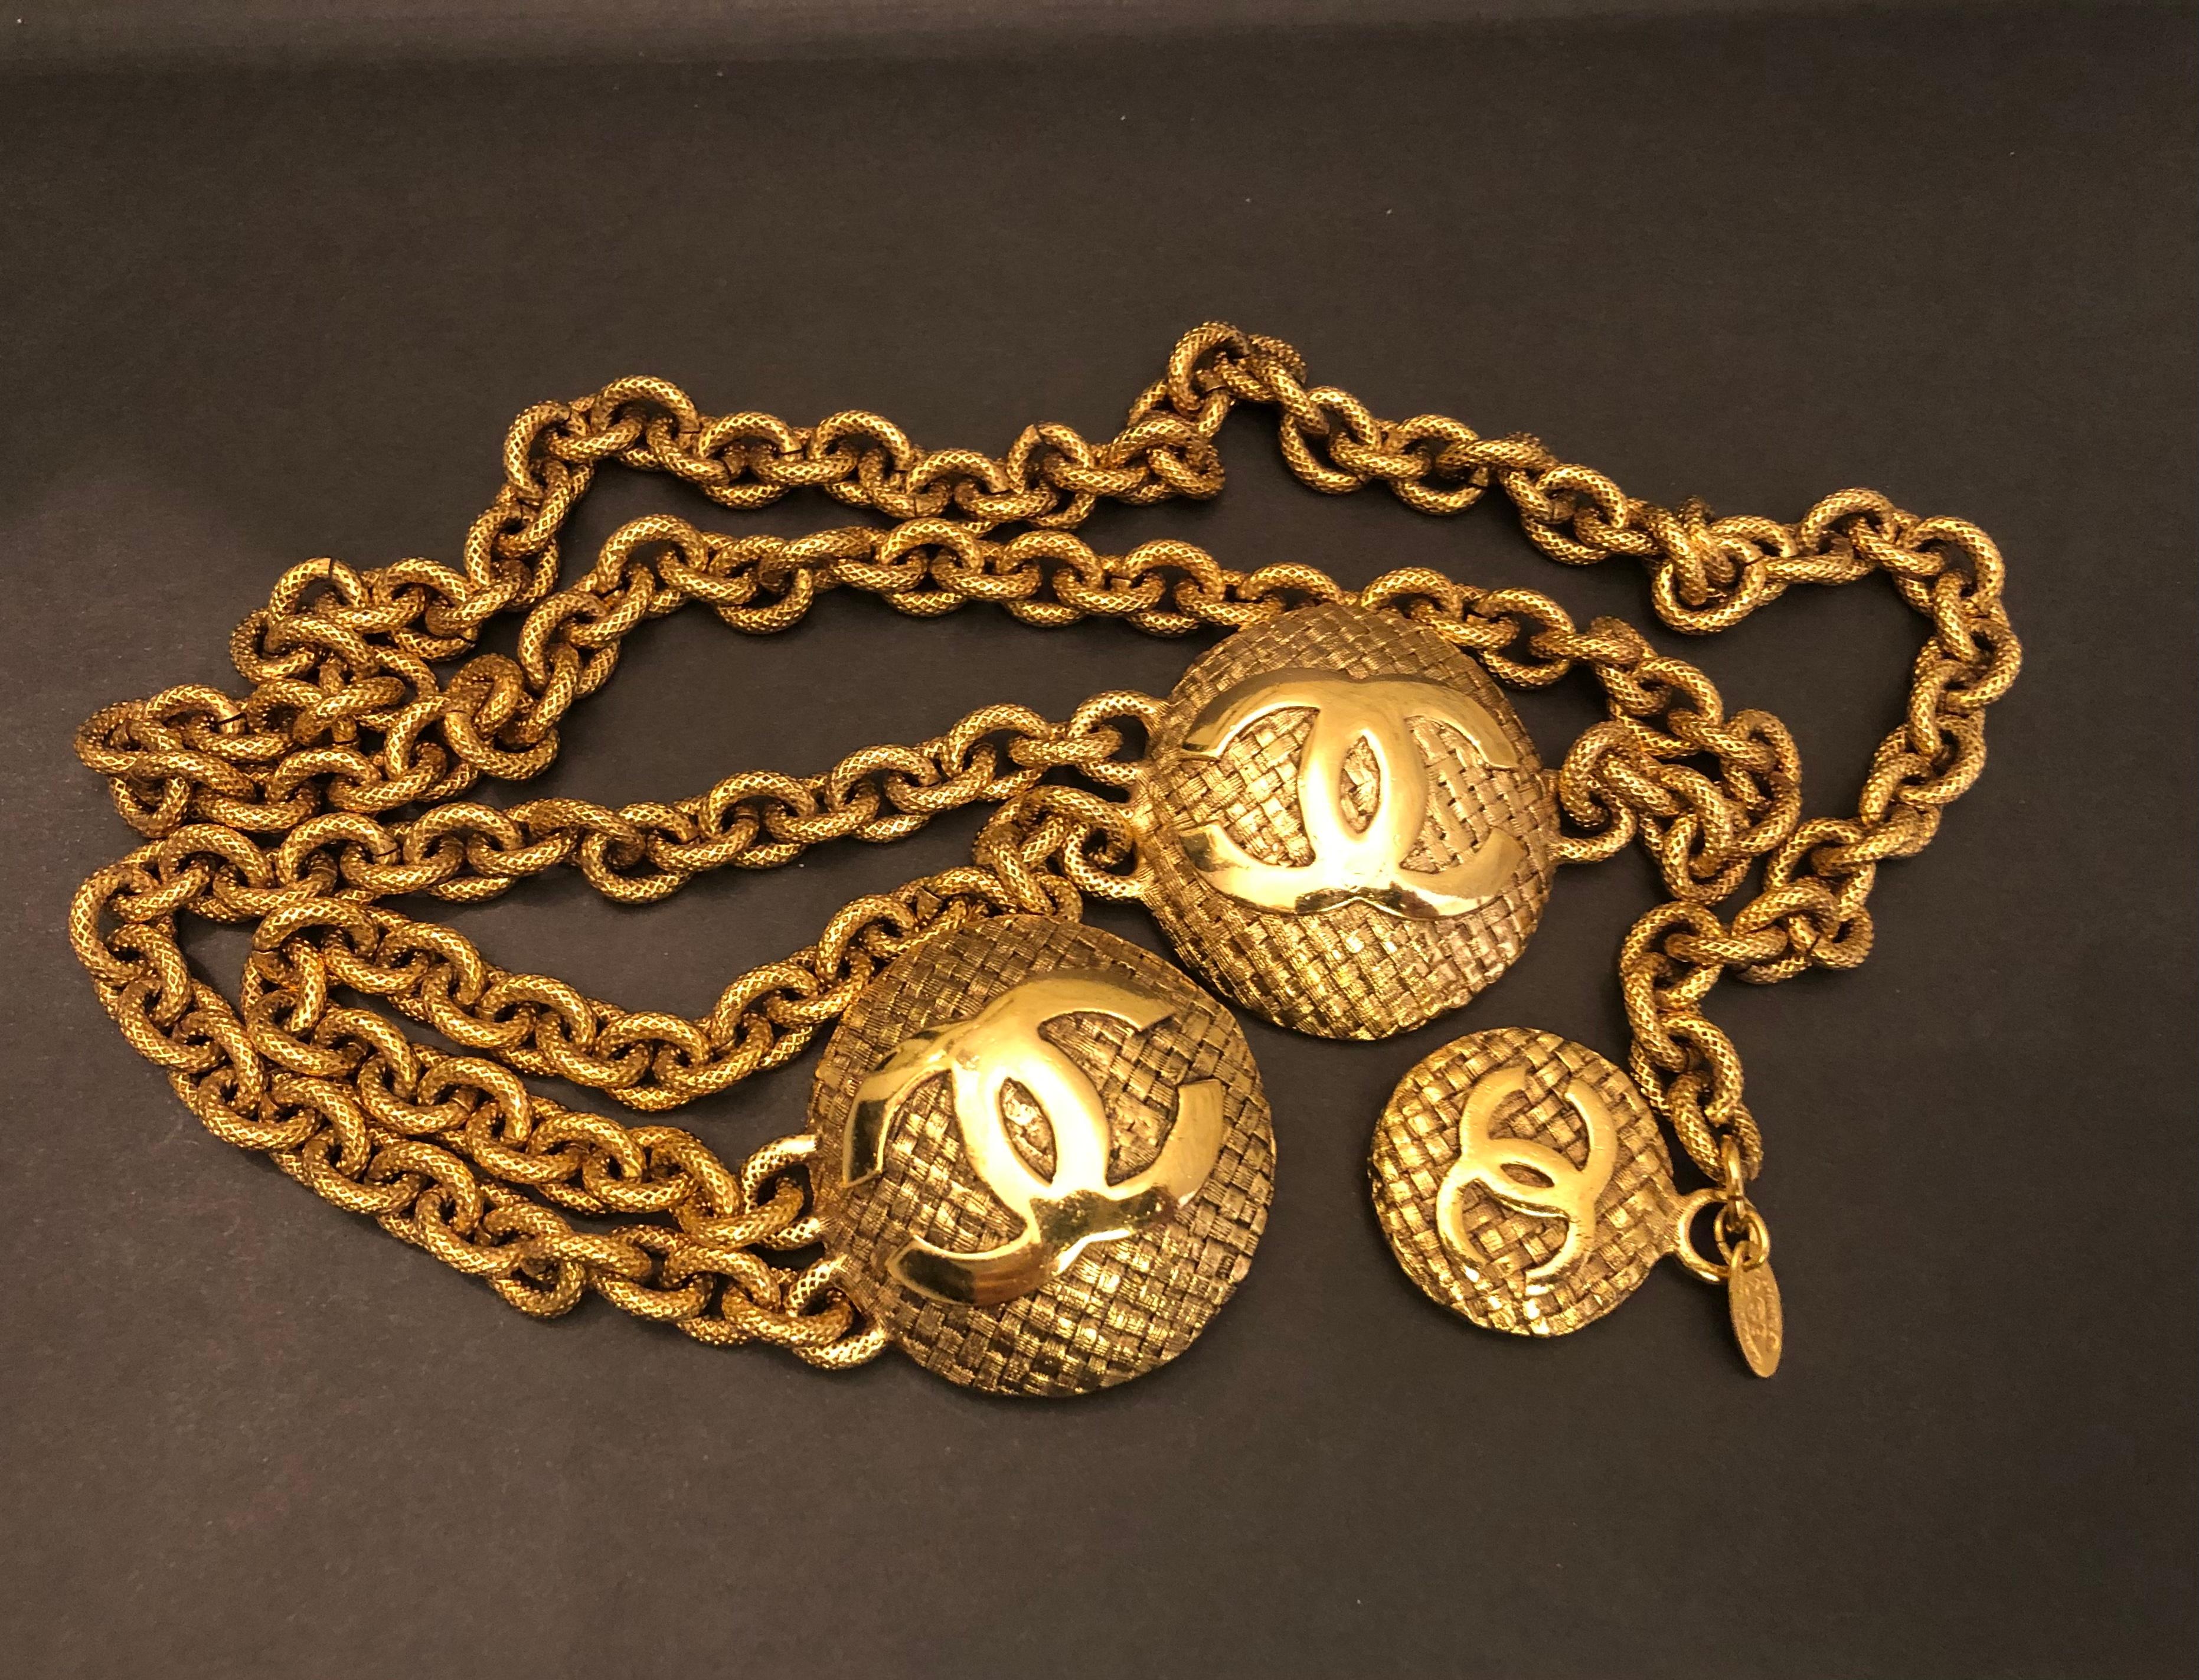 Cette ceinture CHANEL vintage est faite de chaînes texturées dorées et comporte deux médaillons CC en tweed et une breloque CC en tweed. Fermeture à crochet réglable. La chaîne mesure environ 87 cm. Les médaillons mesurent 4 cm et 2,6 cm. Estampillé